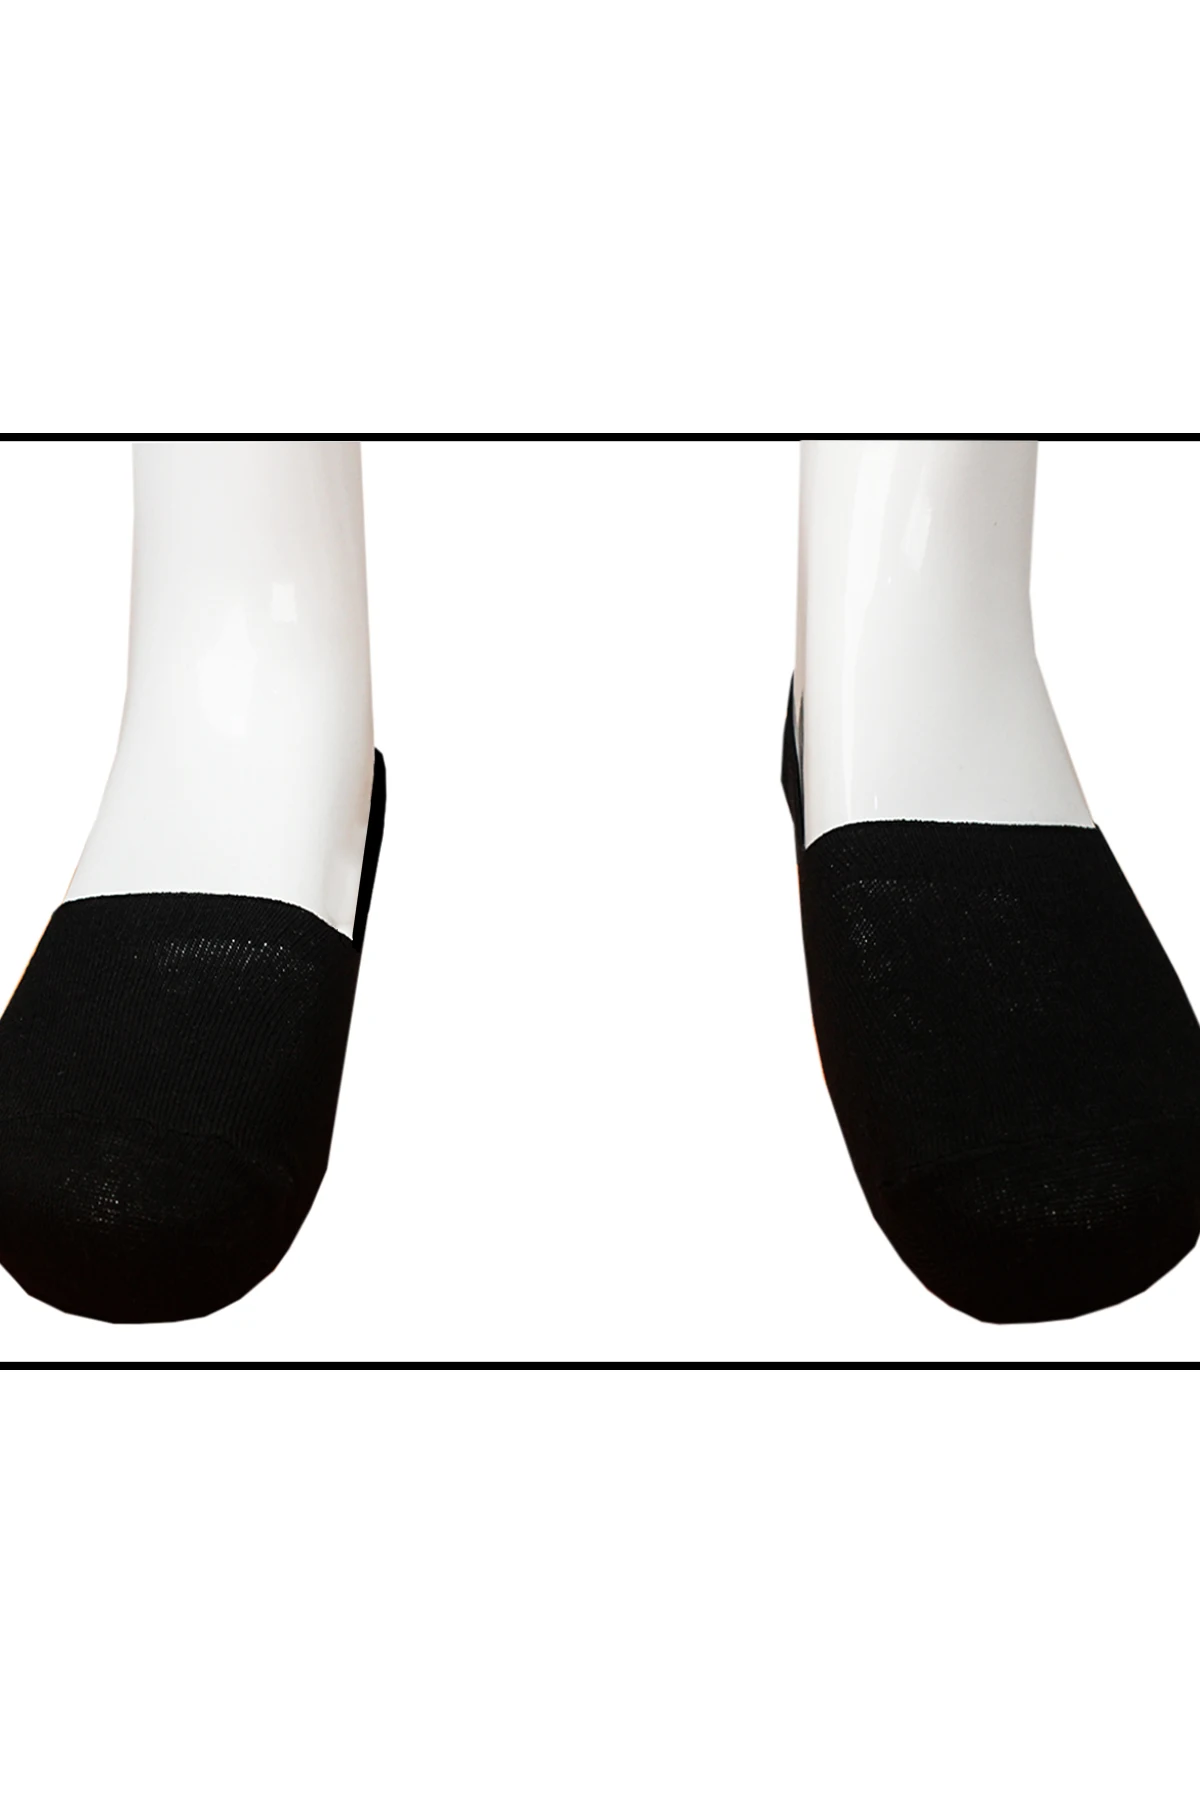 9 шт., мужские носки, тапочки, хлопок, невидимые, не показывают, носки-башмачки, лето-осень, модные мужские носки от EU41-44 Varetta - Turkey от AliExpress RU&CIS NEW